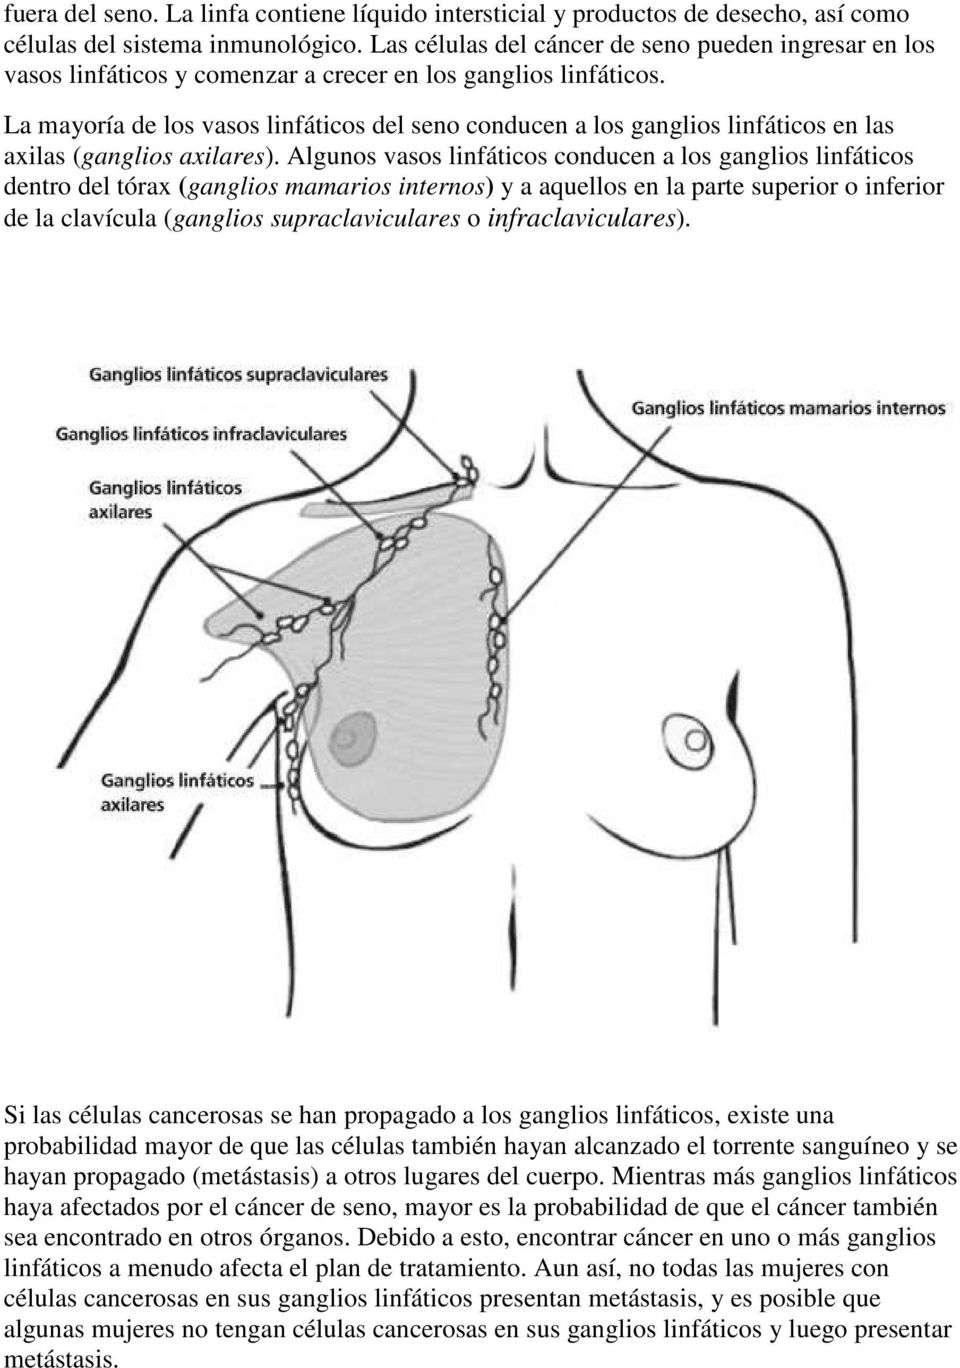 La mayoría de los vasos linfáticos del seno conducen a los ganglios linfáticos en las axilas (ganglios axilares).